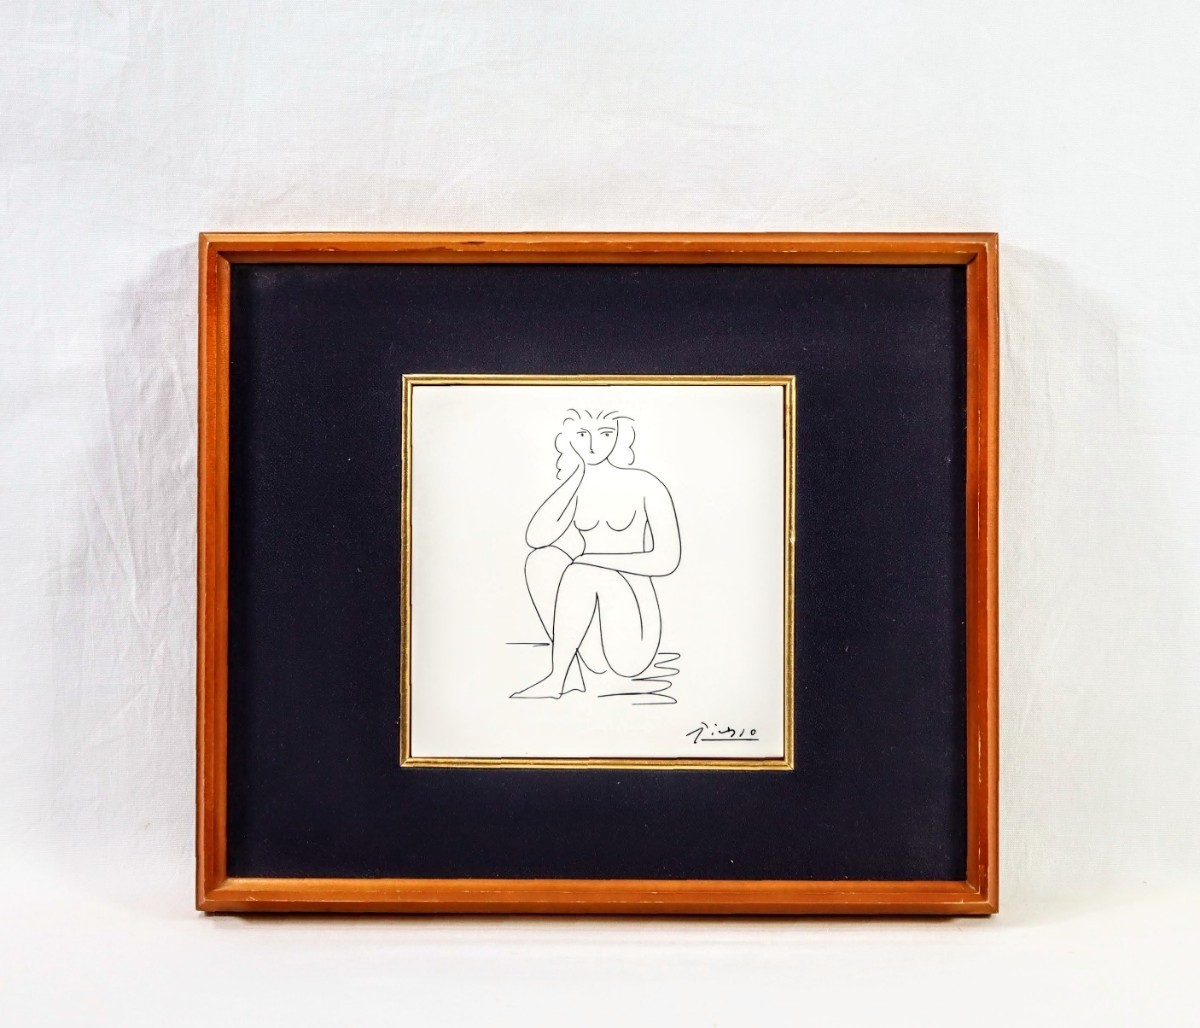 パブロ・ピカソ 瀬栄陶器会社製陶板「裸婦」画寸 15.5cm×15cm 余分な線を省き簡素でしなやかな線描で描いた秀作 8169